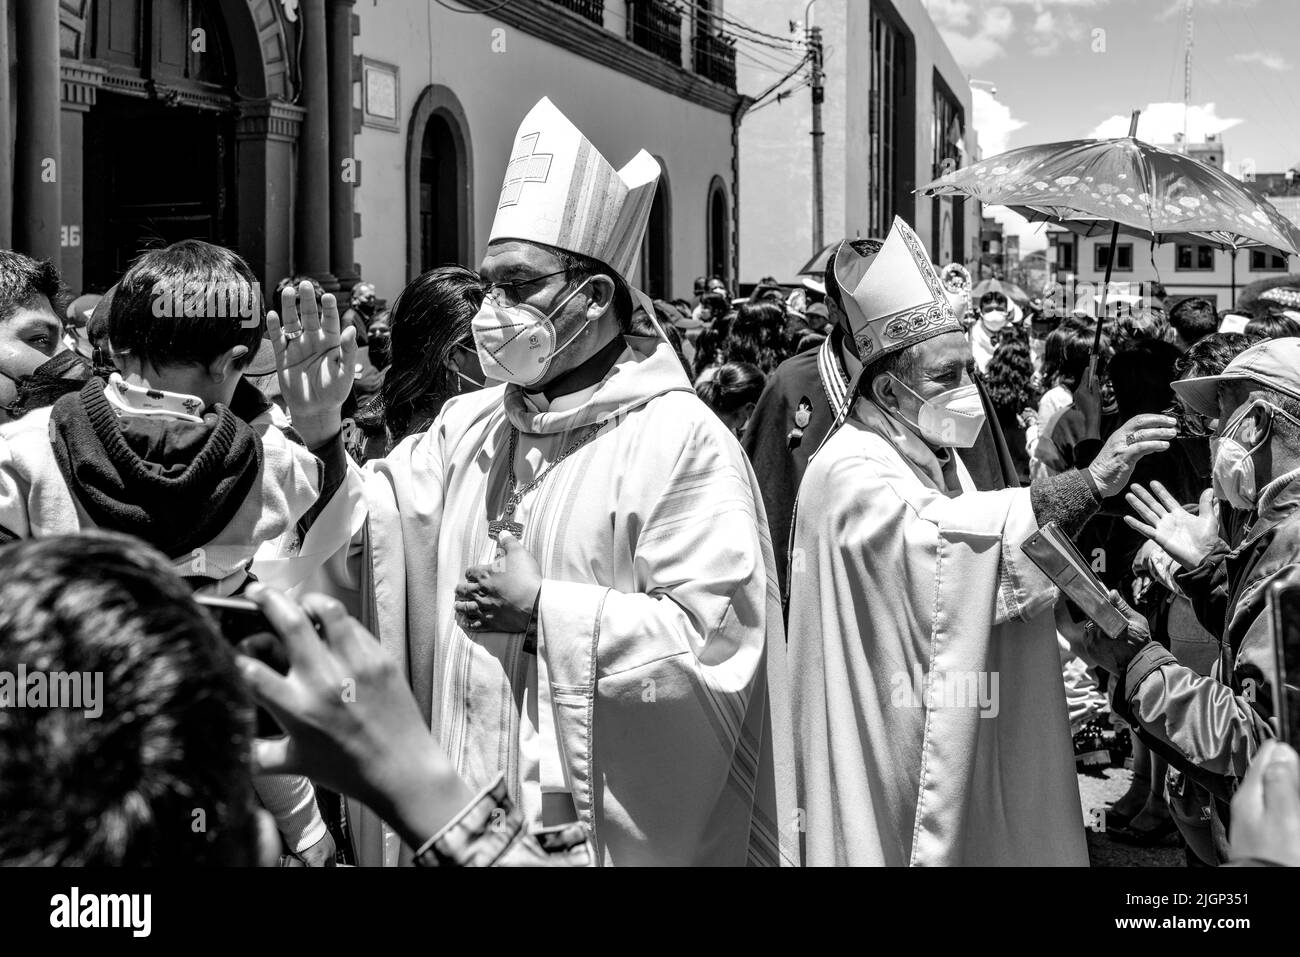 Les prêtres catholiques bénissent les gens dans la foule après une messe en plein air sur la Plaza de Armas, Puno, province de Puno, Pérou. Banque D'Images